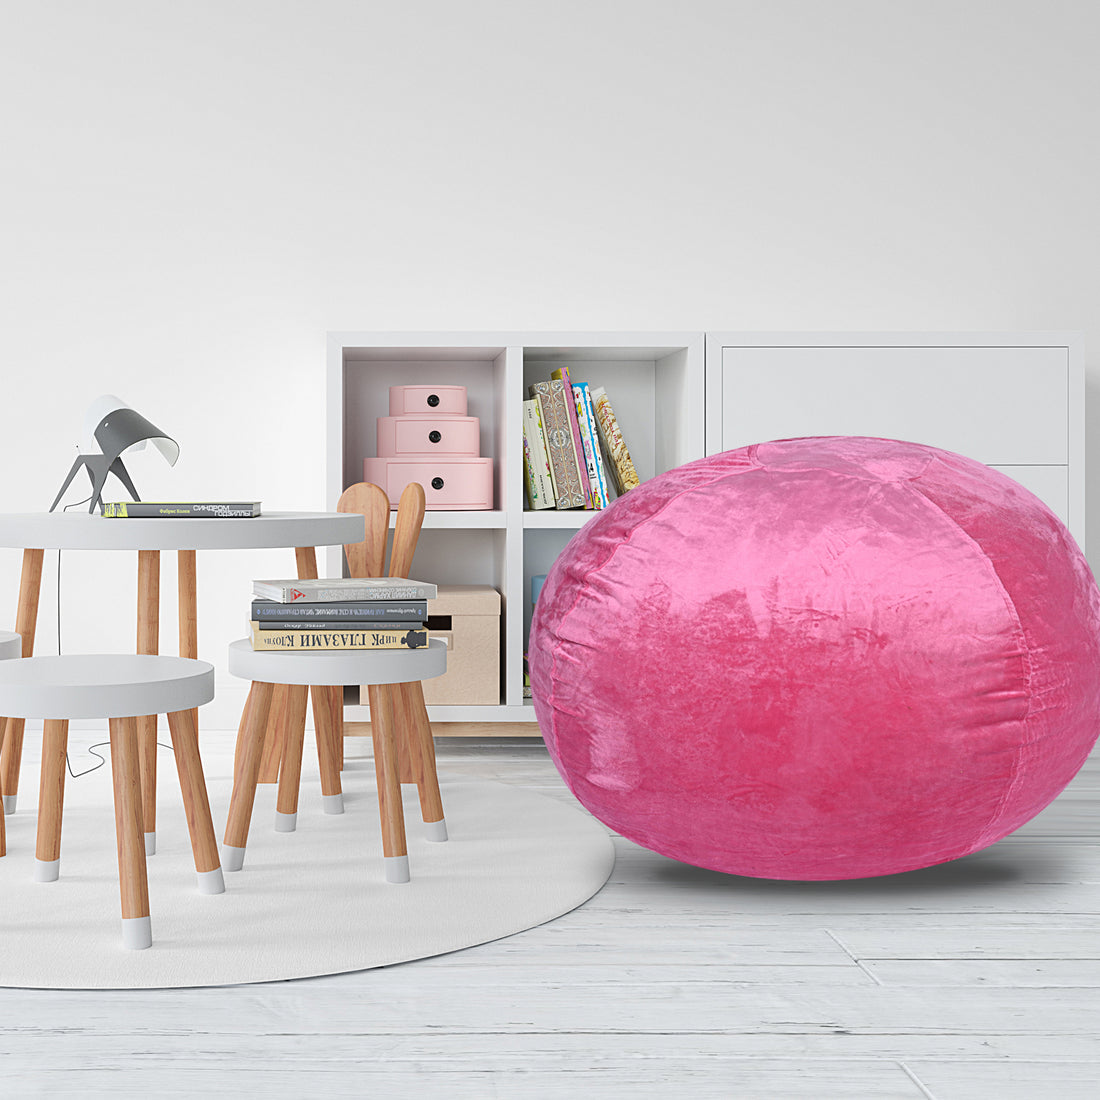 Minky Velvet Bean Bag Chair, Pink 5Ft Plush Floor